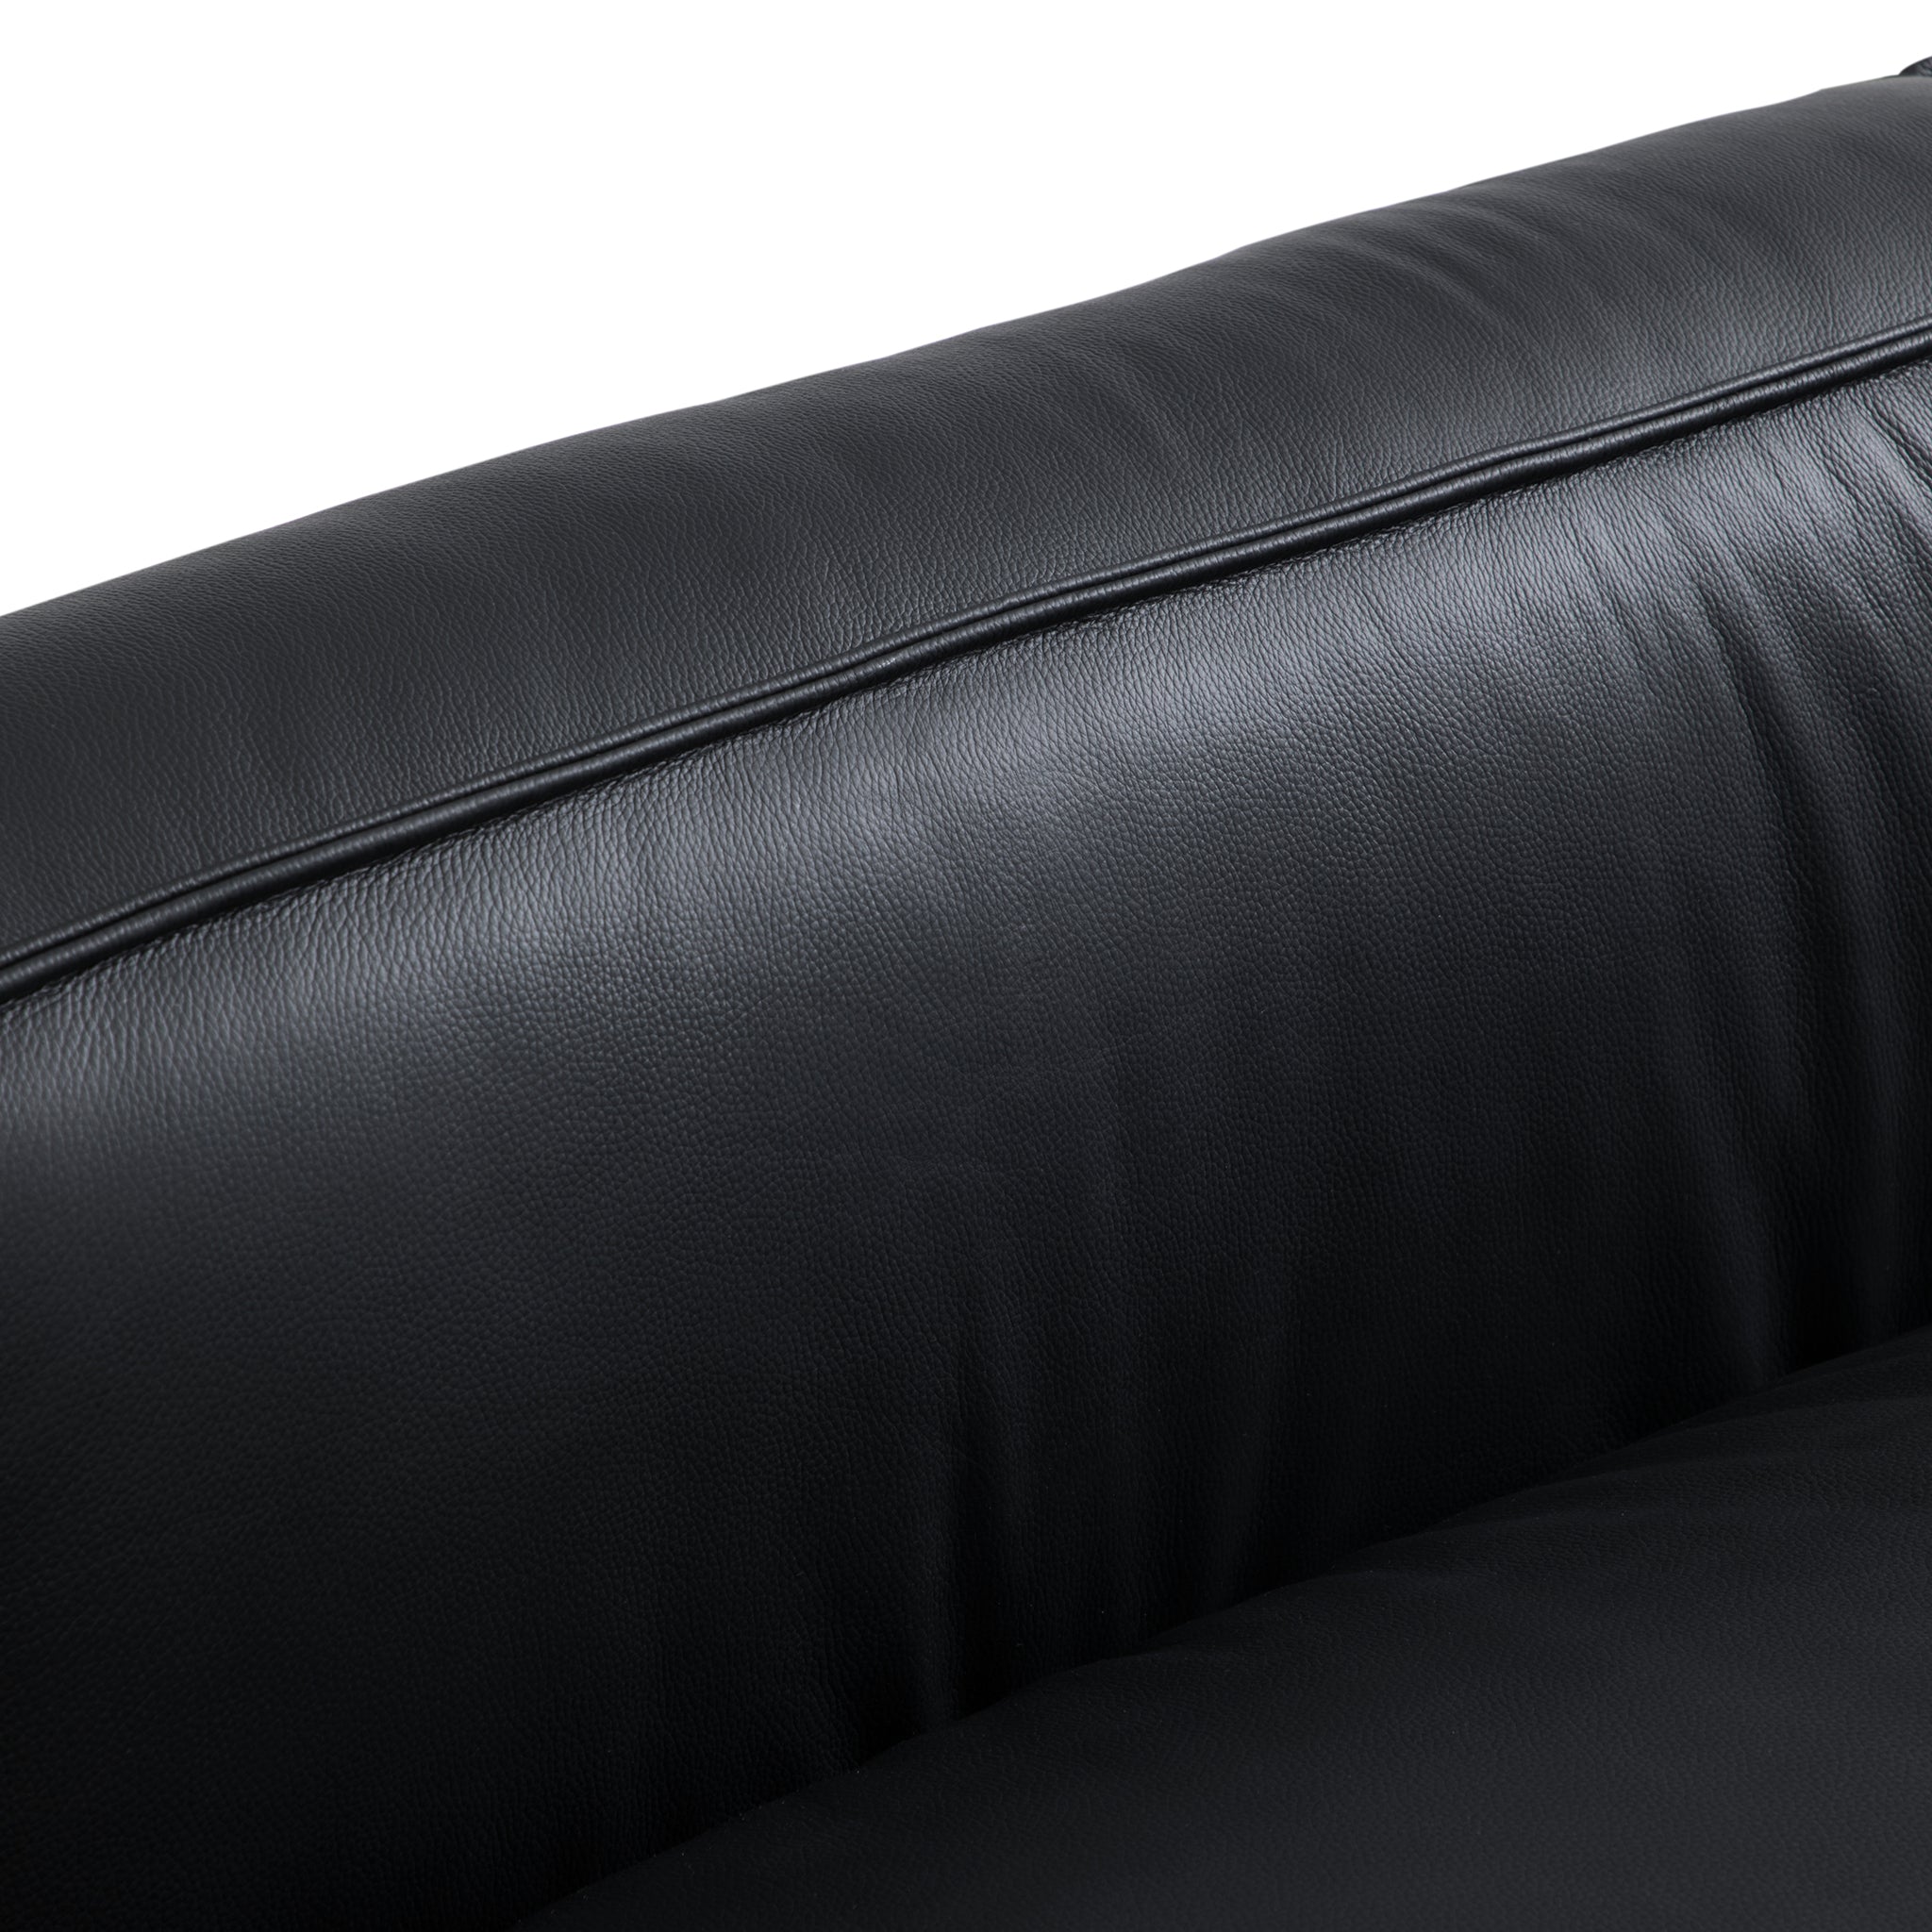 Luxury Minimalist Leather Black Sofa